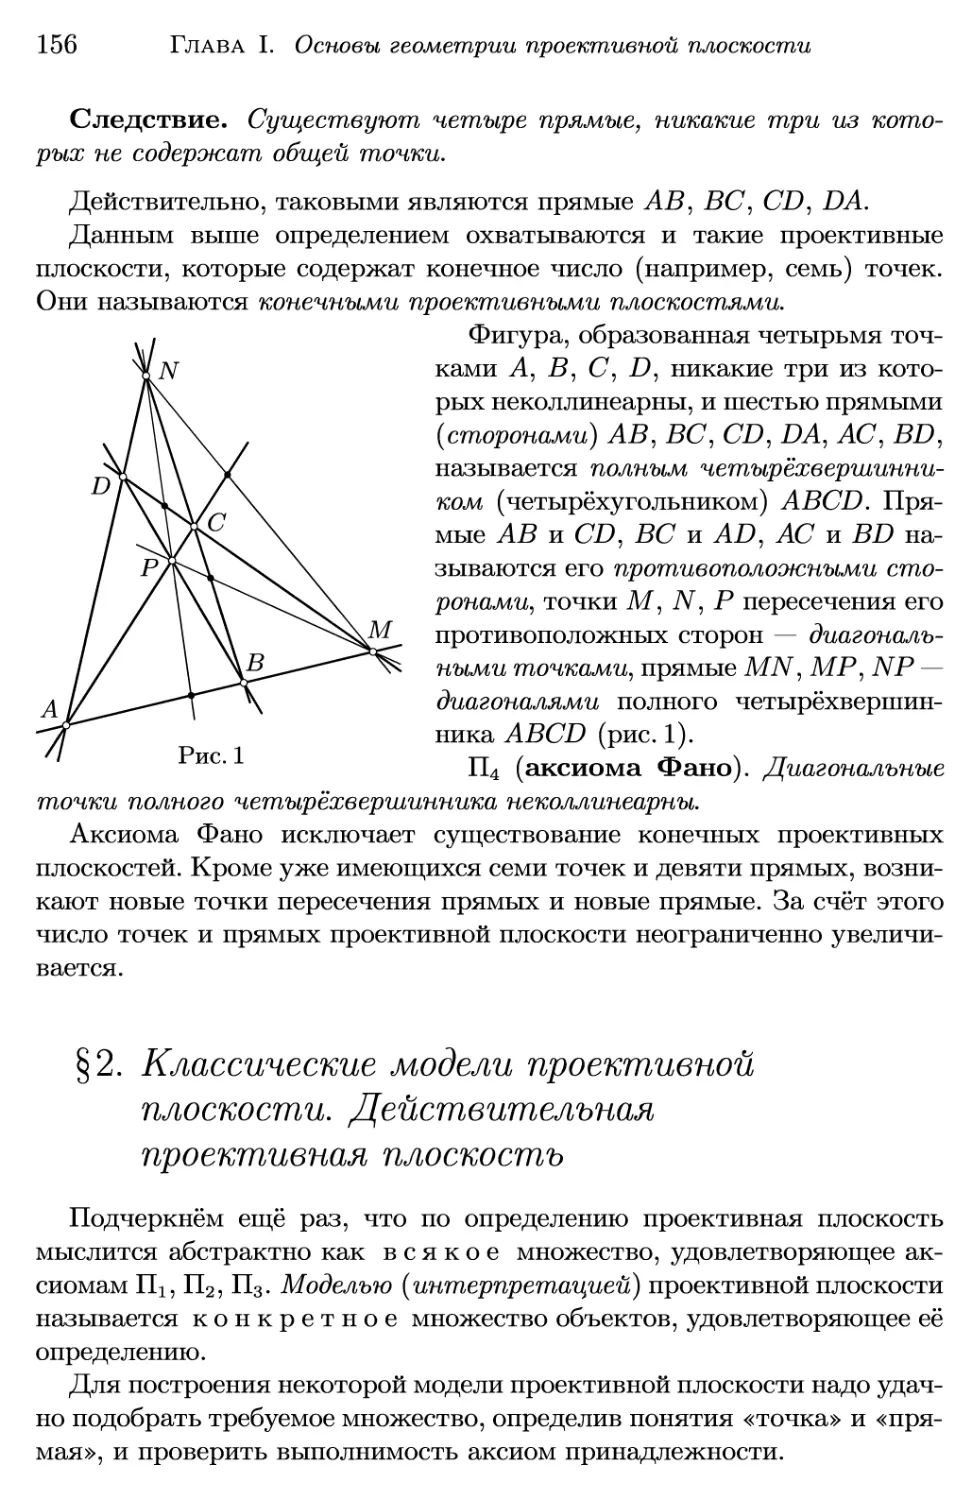 §2. Классические модели проективной плоскости. Действительная проективная плоскость